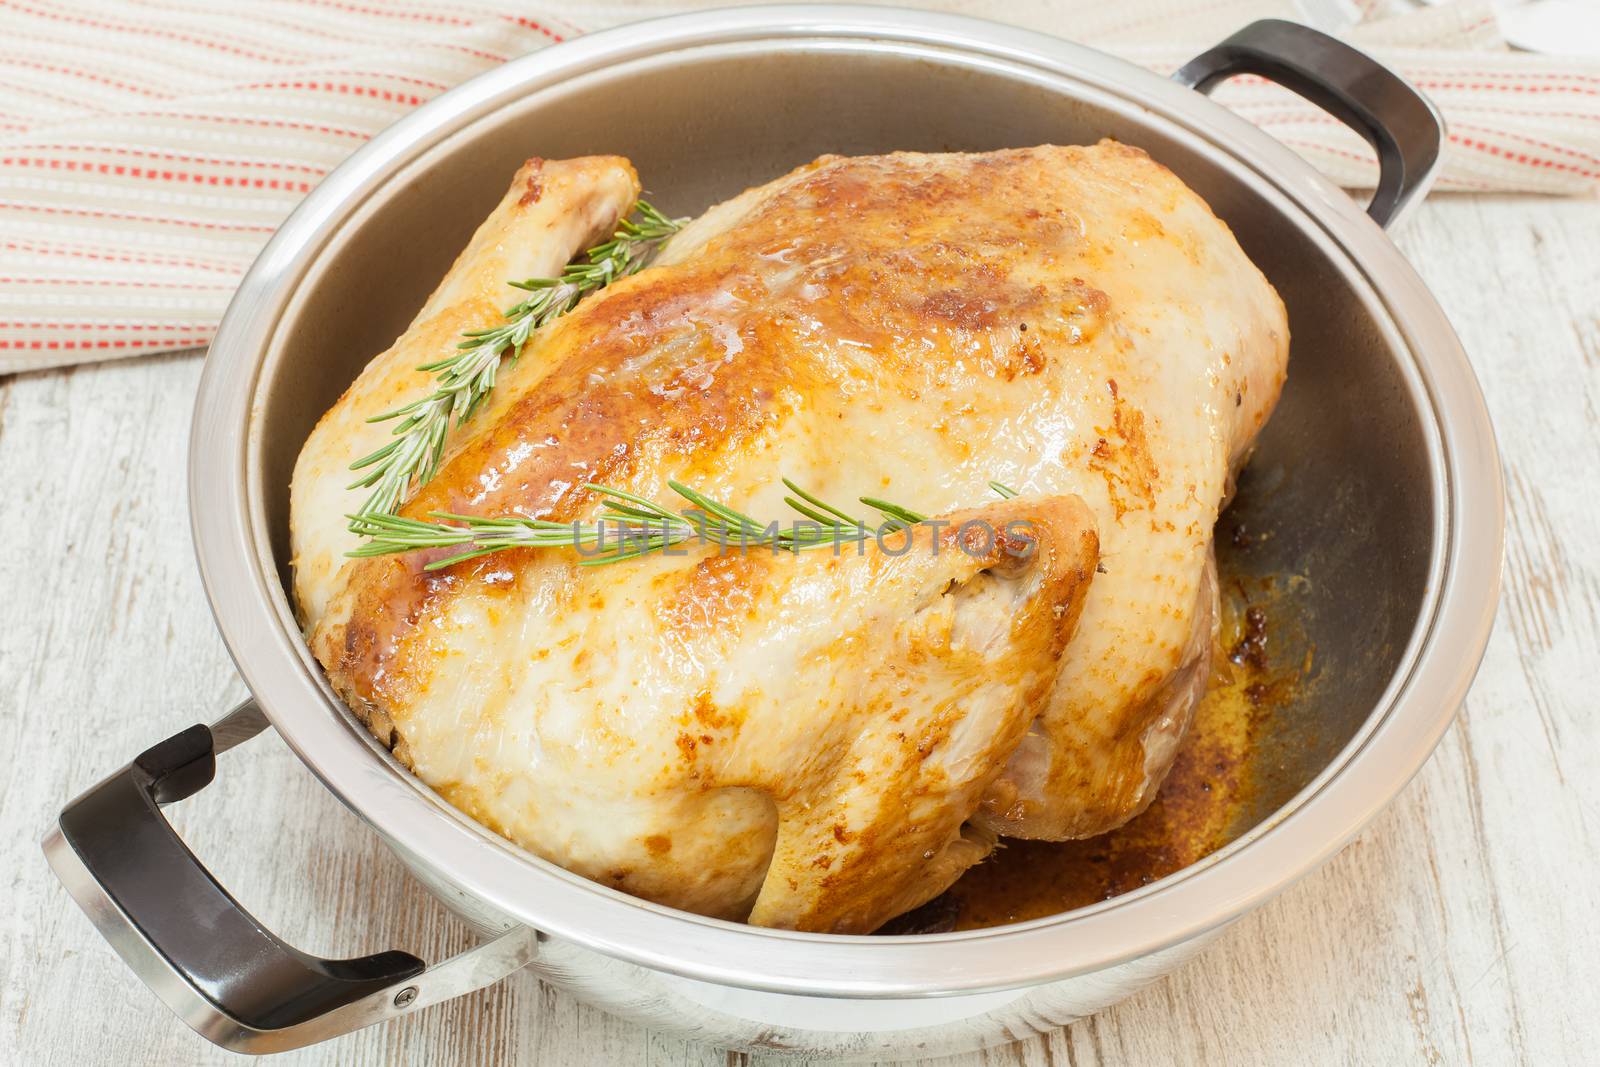 Roast turkey in pan by Slast20